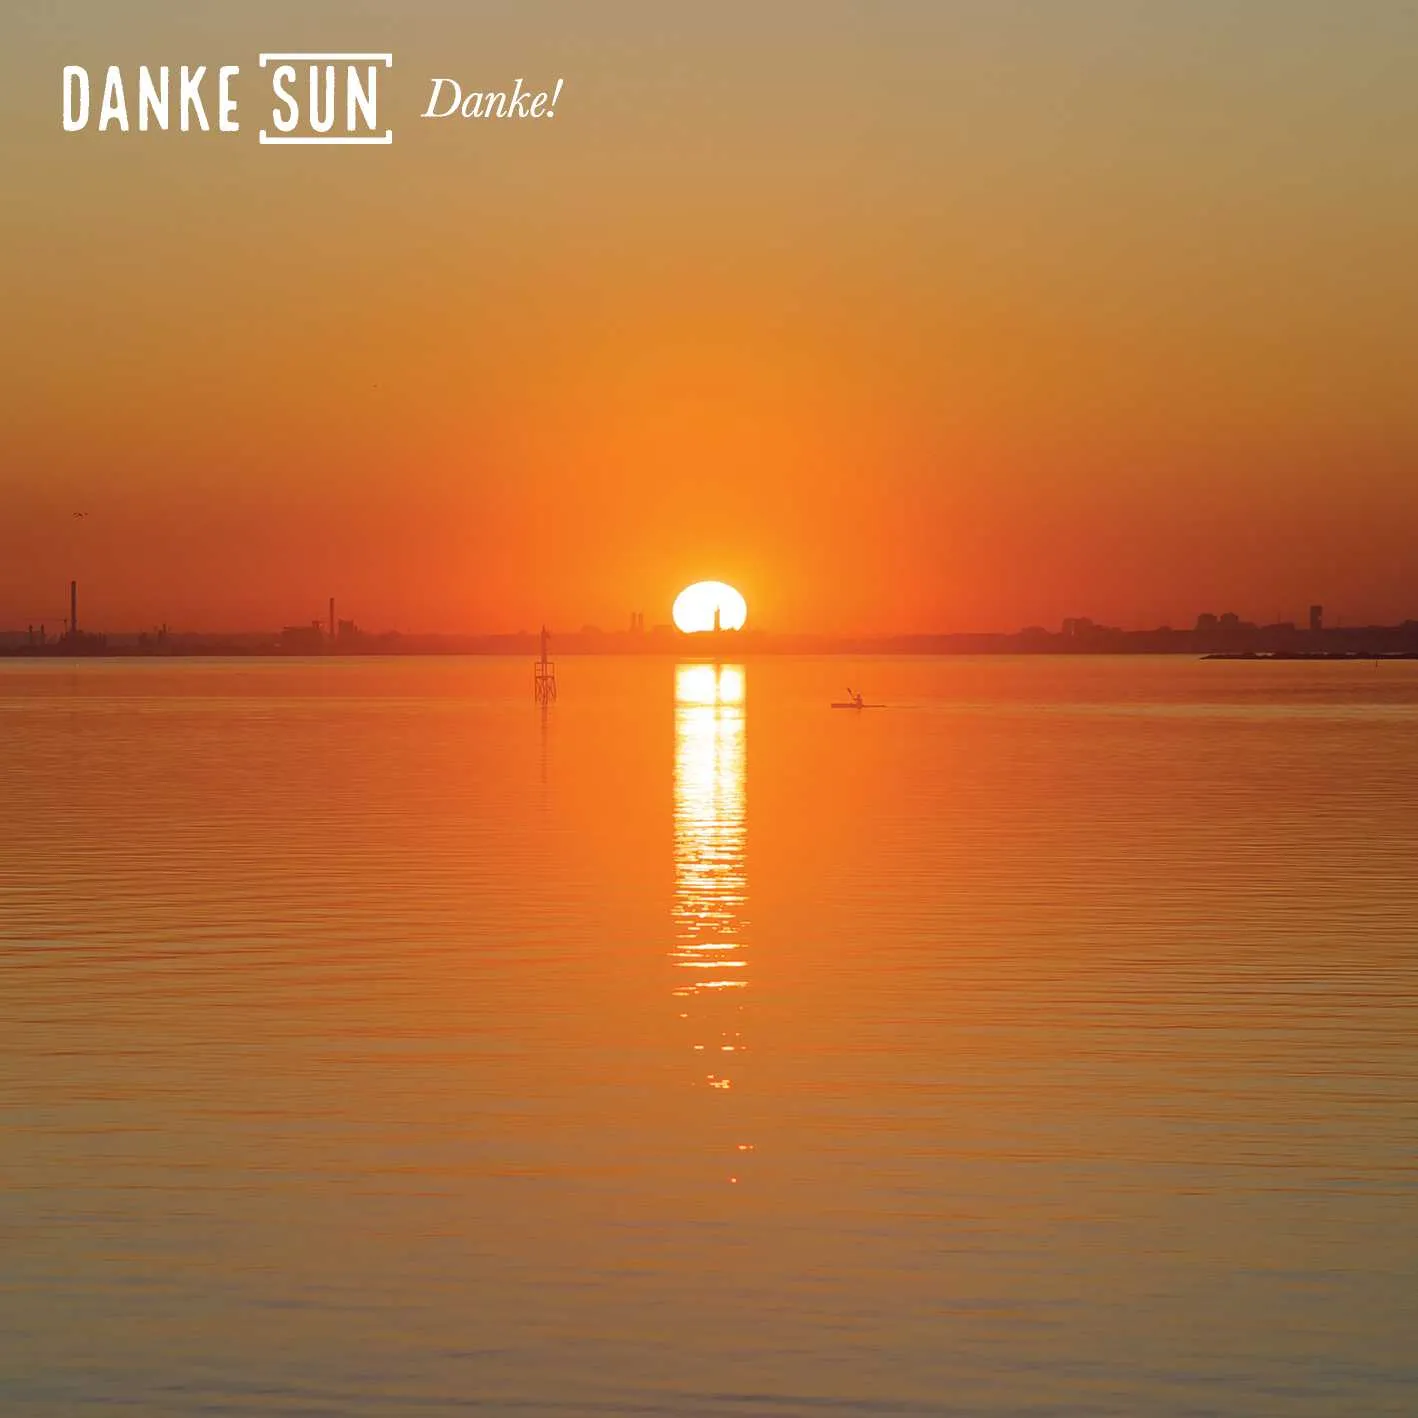 Album cover for “Danke!” by Danke Sun